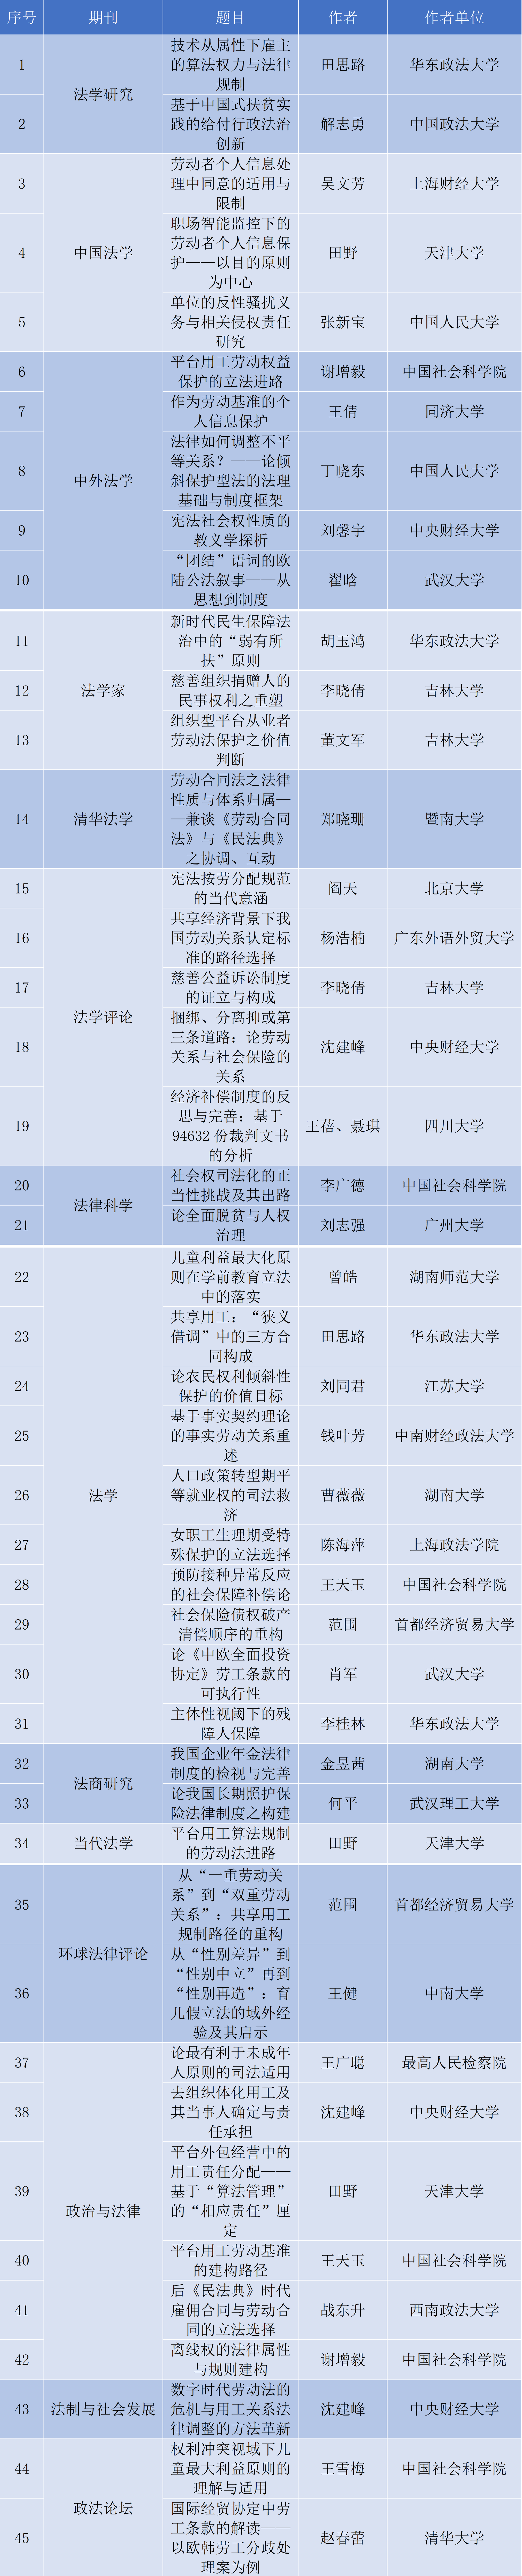 重磅】2022年度CLSCI社会法论文盘点与分析- 学术前沿-中国劳动和社会